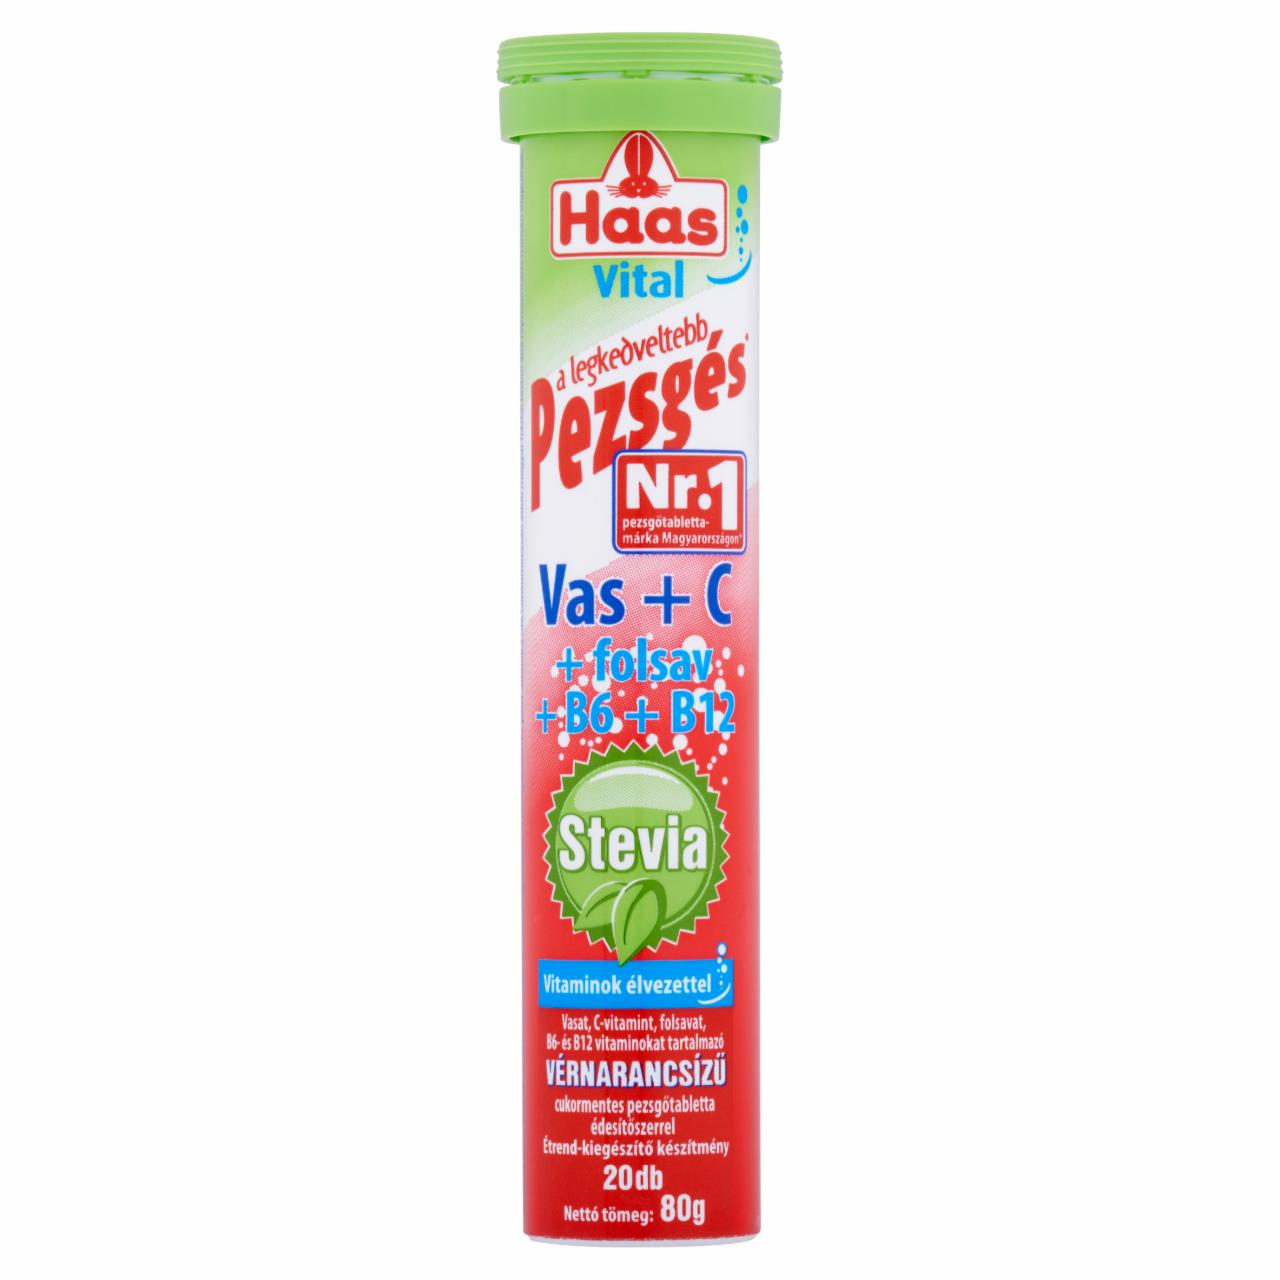 Képek - Haas Vital Vas + C vérnarancsízű cukormentes étrend-kiegészítő pezsgőtabletta 20 db 80 g